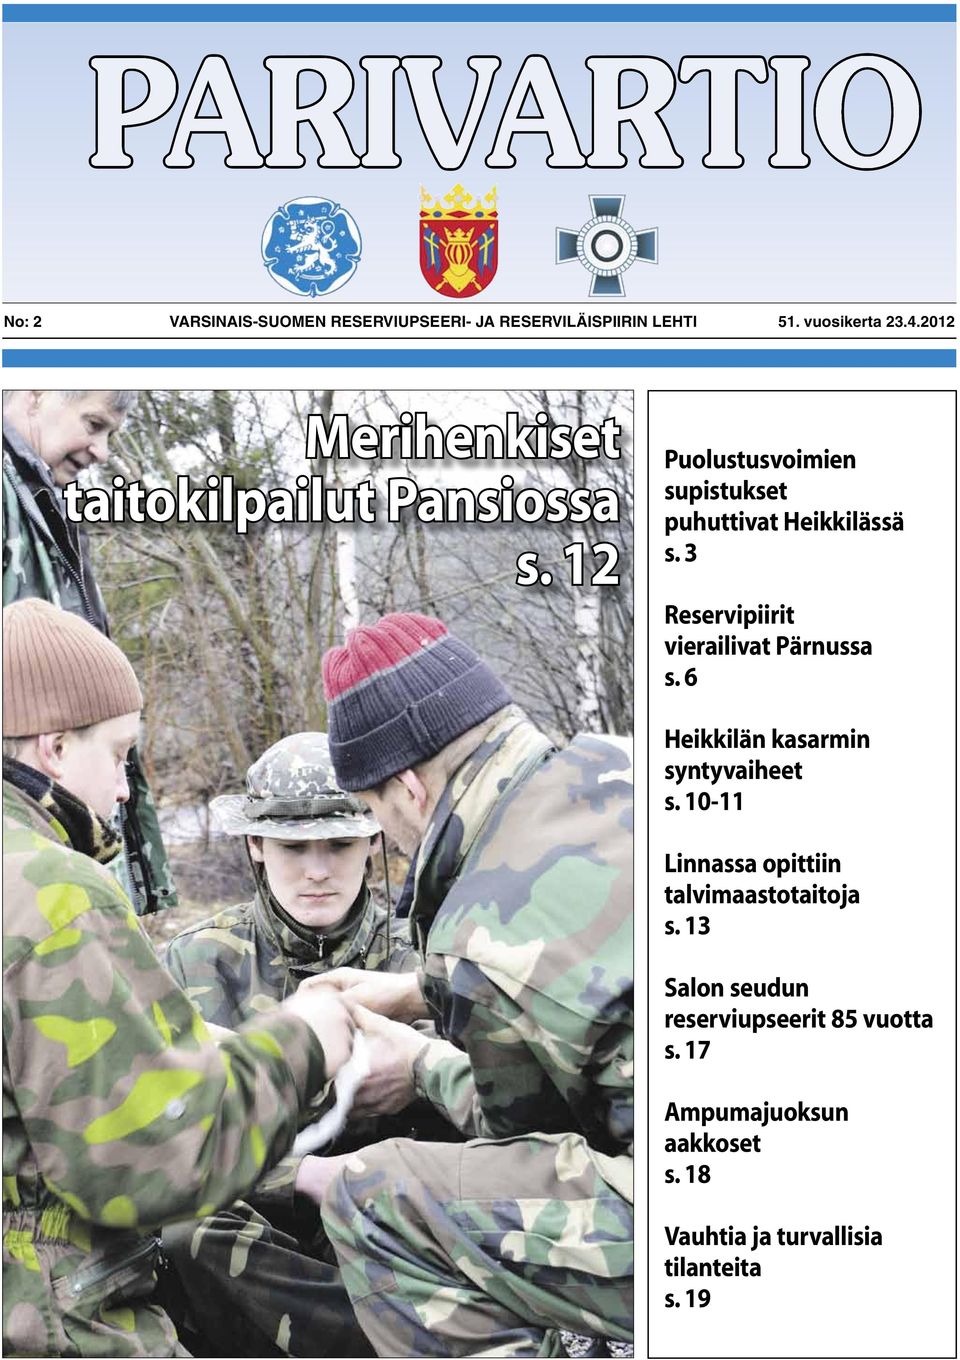 3 Reservipiirit vierailivat Pärnussa s. 6 Heikkilän kasarmin syntyvaiheet s.